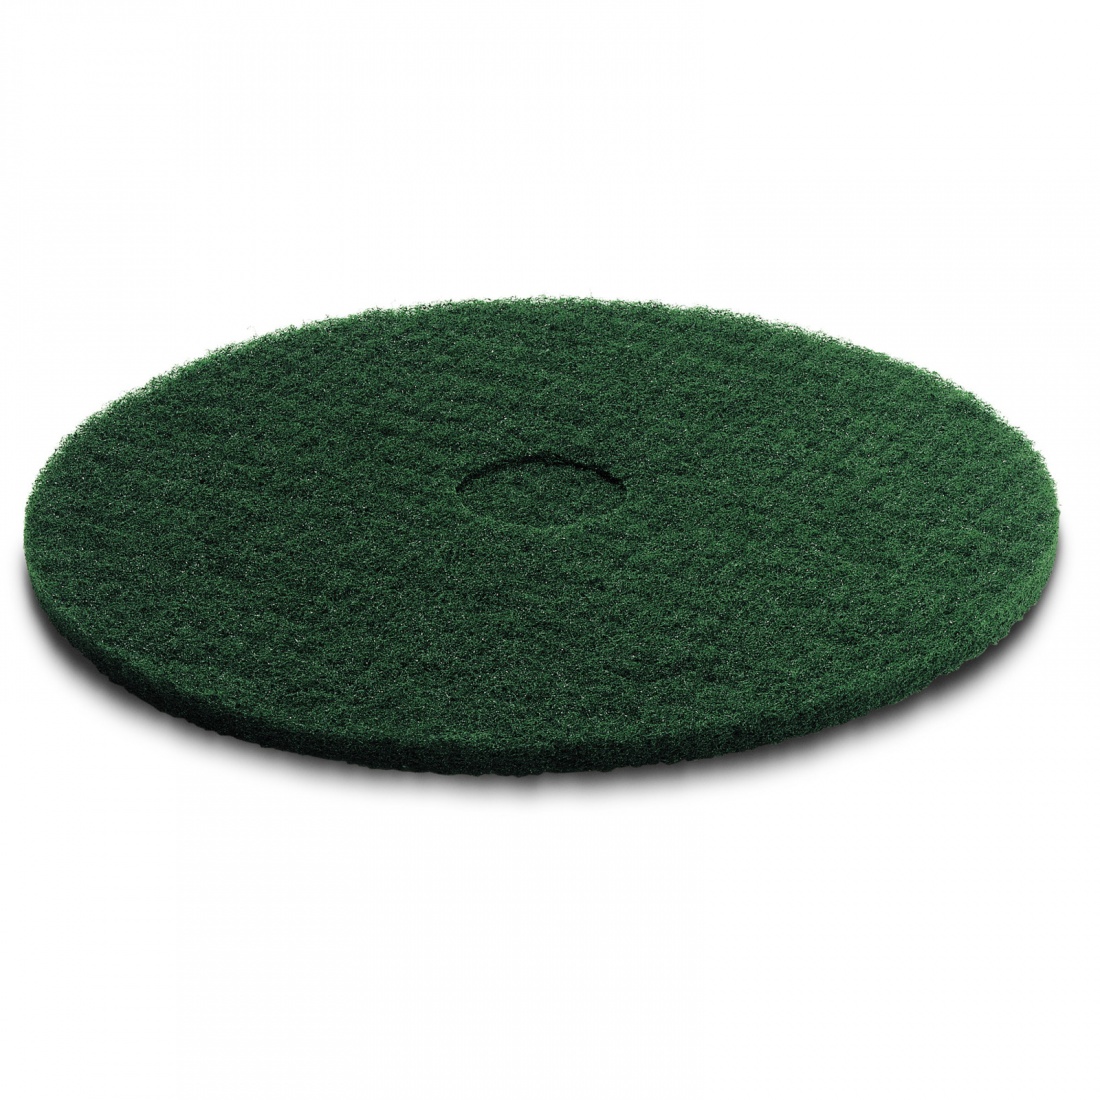 Пад, средне жесткий, зеленый, 356 mm